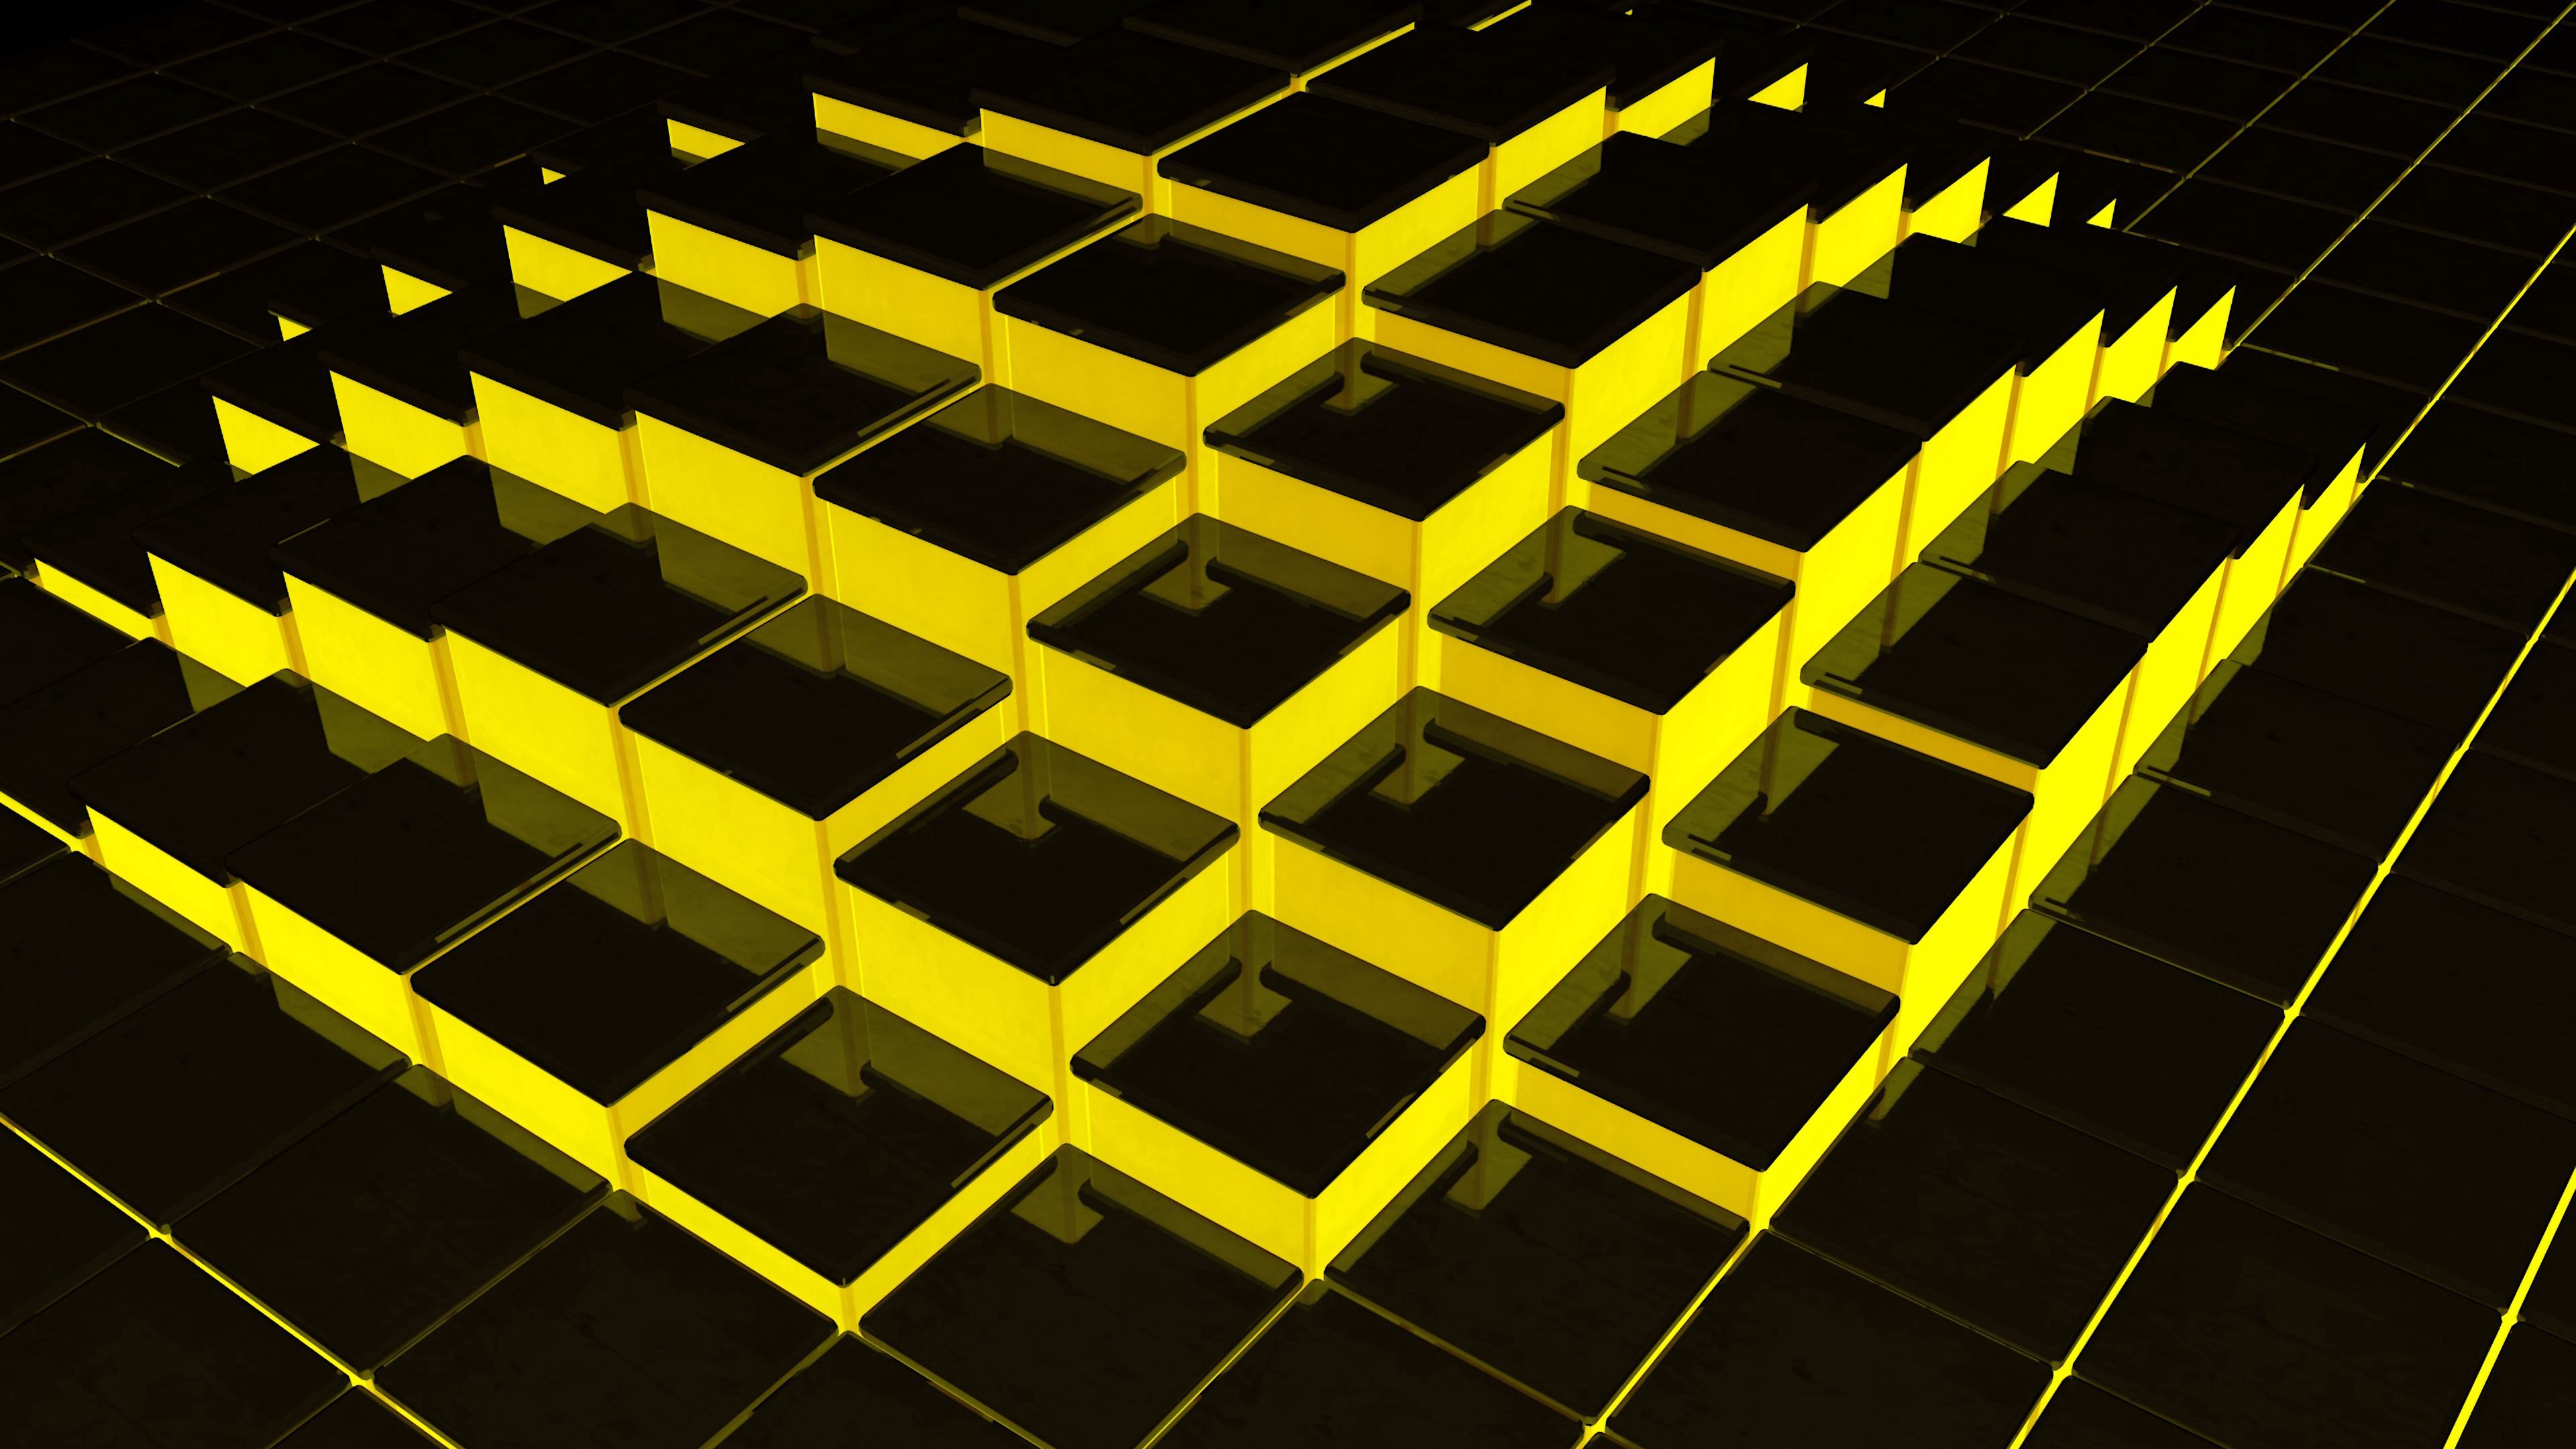 Hình nền đen vàng cấu trúc 3D sẽ làm cho màn hình của bạn trở nên phong phú và đầy sức sống. Với những đường nét cấu trúc phi thường và màu sắc đen và vàng vượt trội, hình nền sẽ thật sự trở nên độc đáo!